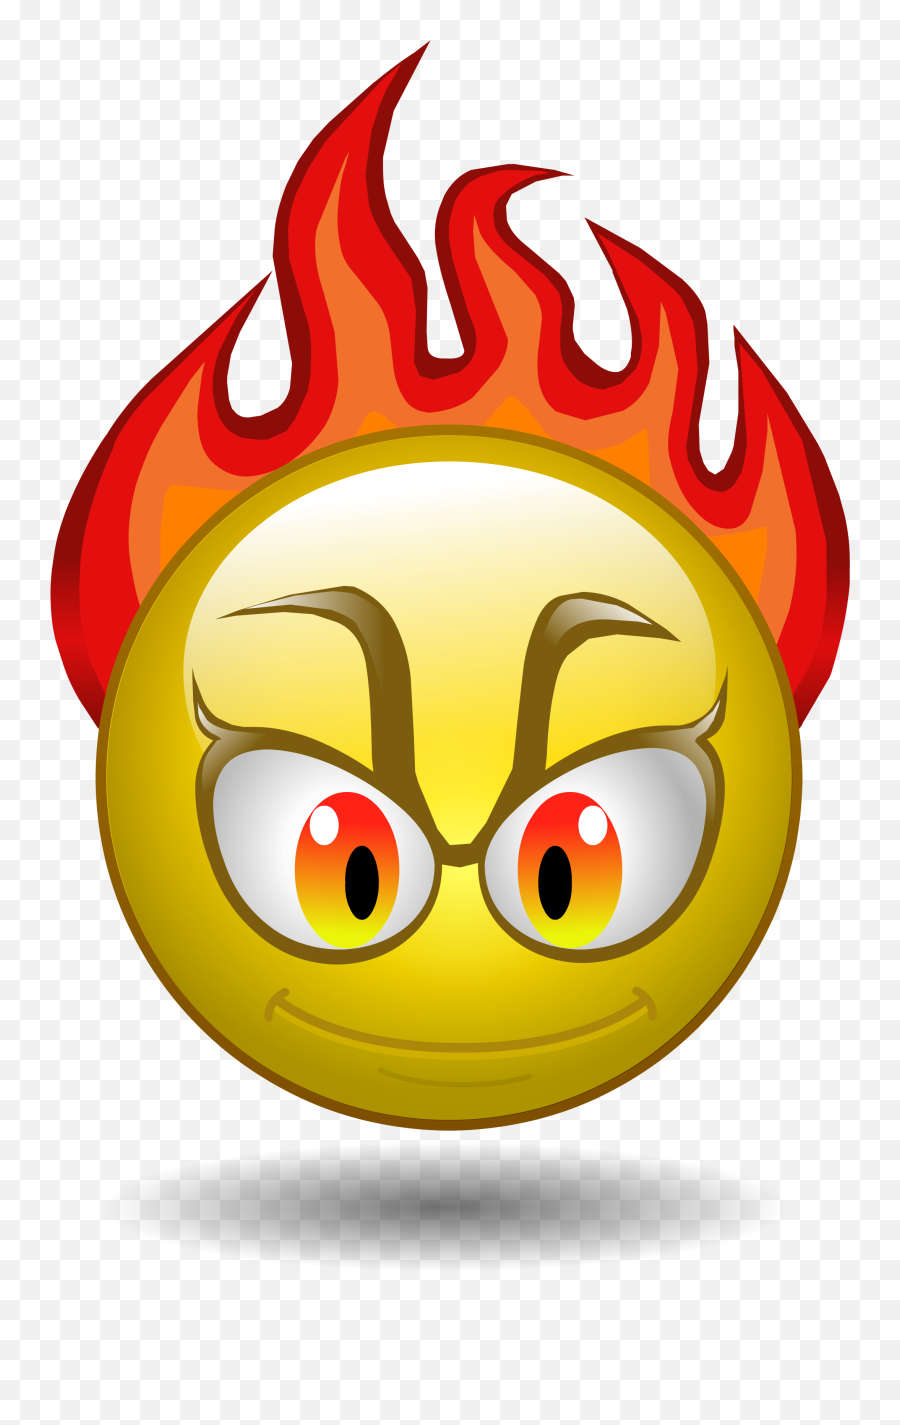 Angry Crying Emoji Png Download Image - Animated Angry Emoji,Angry Cry Emoji